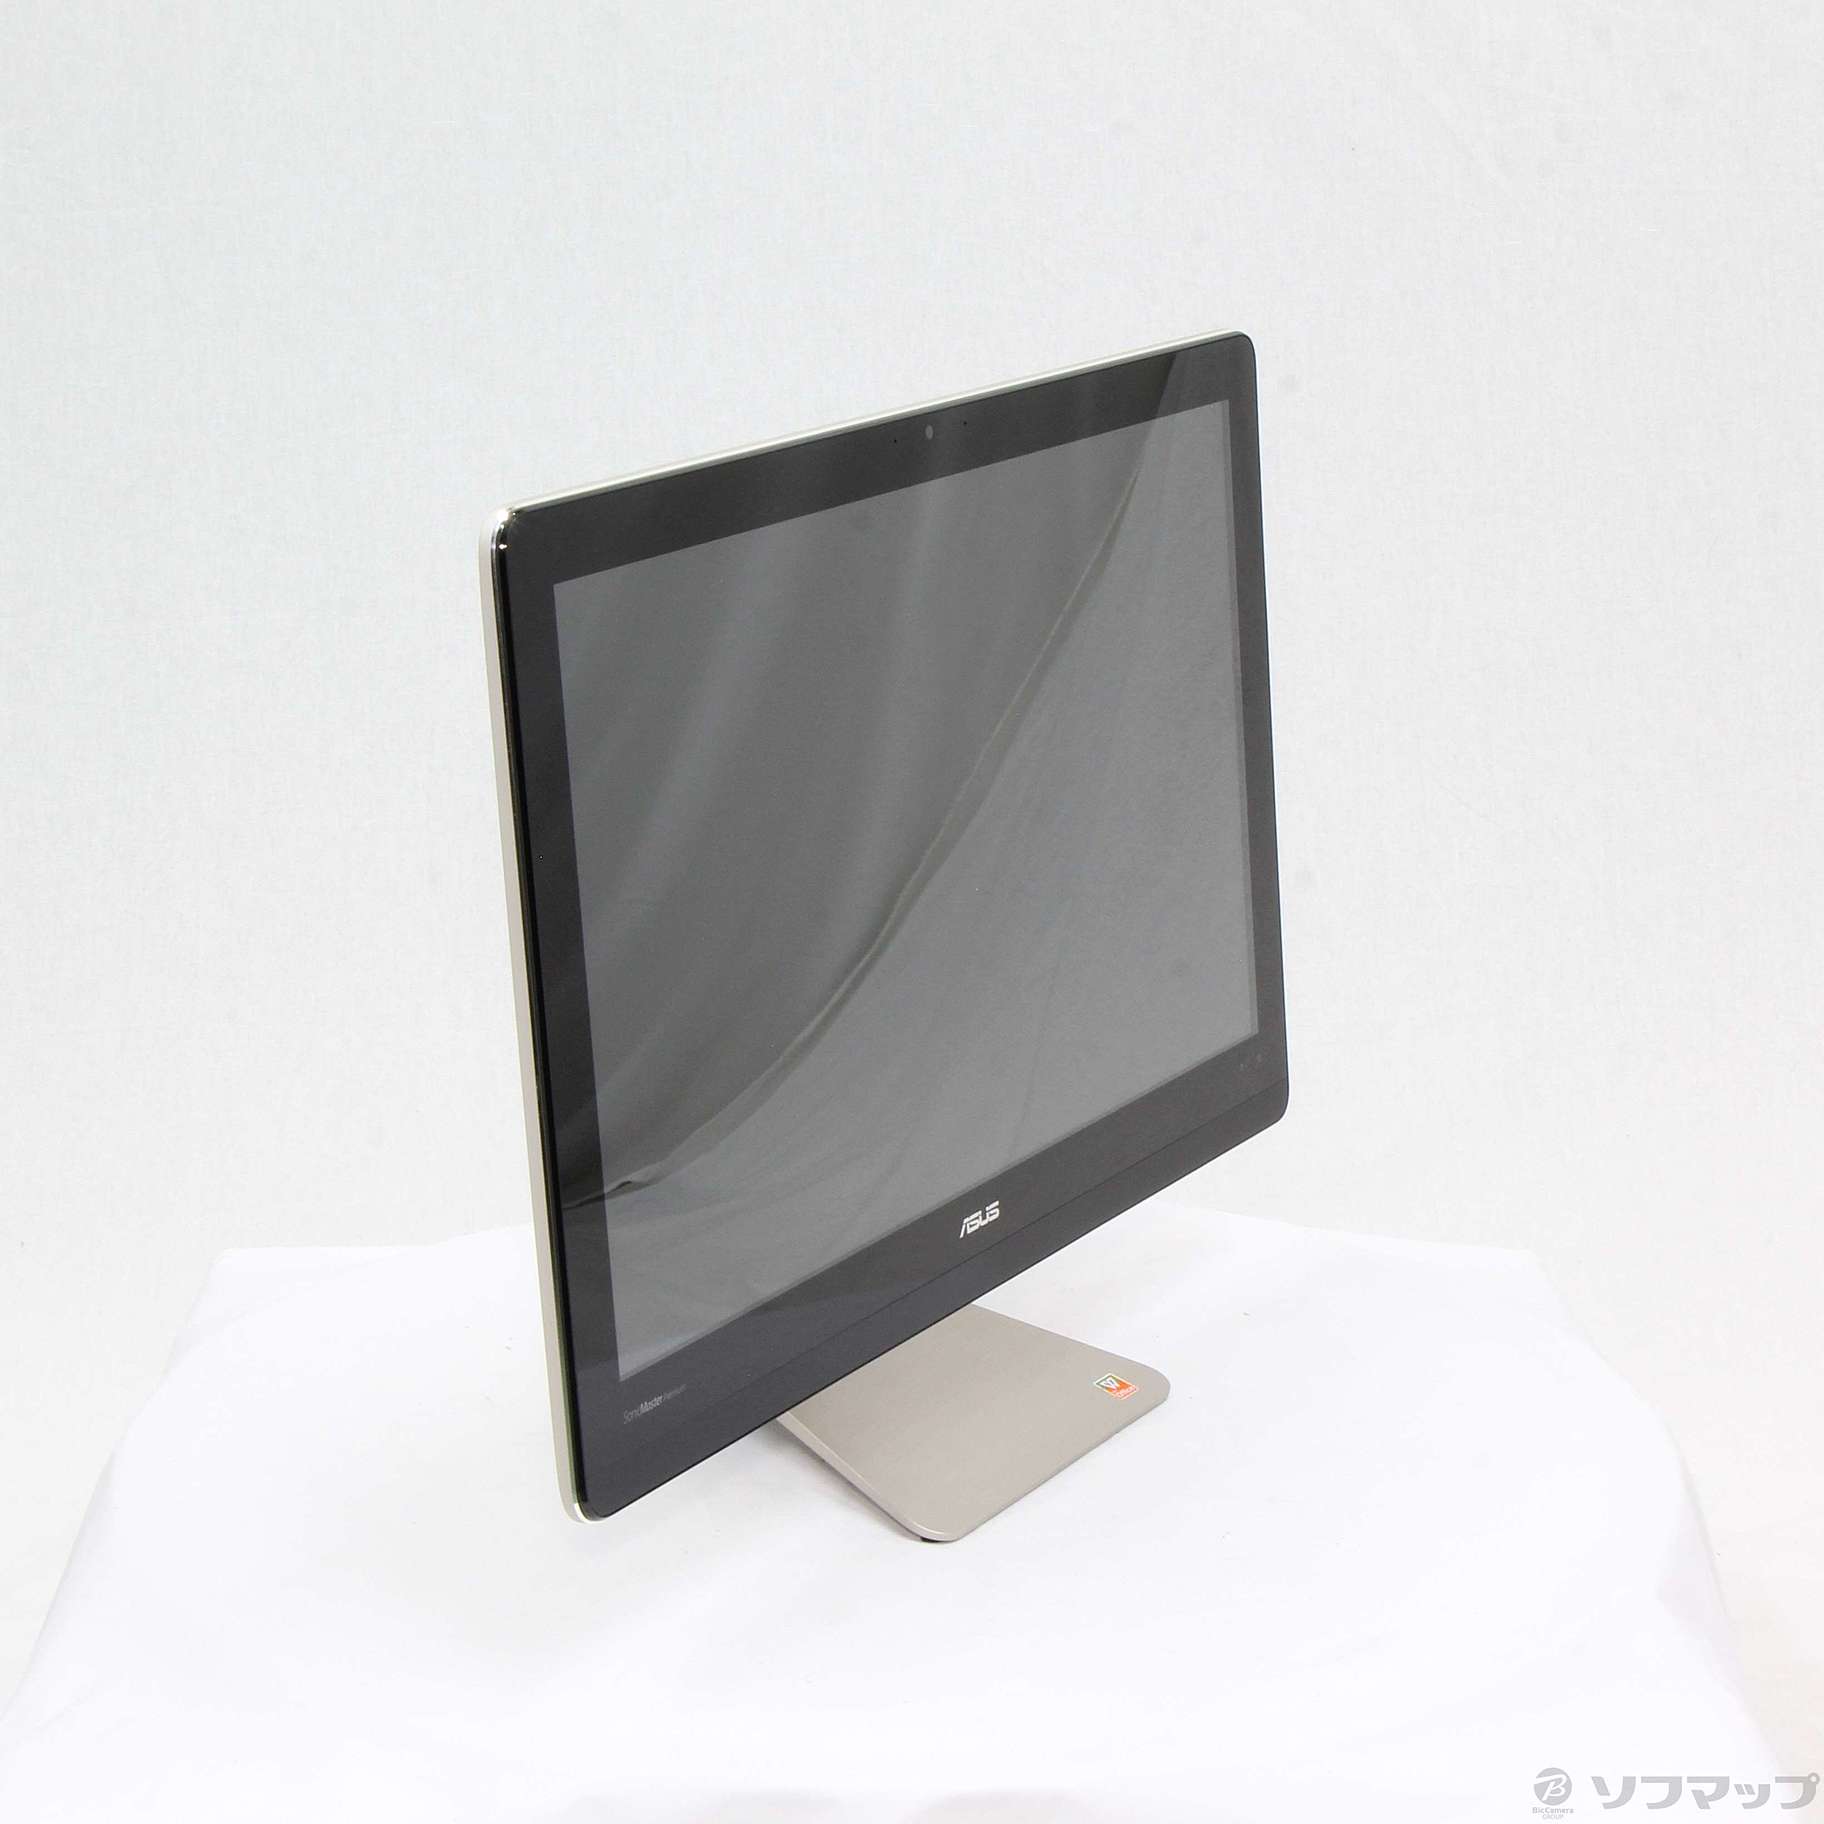 Zen AiO Pro Z220IC 〔Windows 10〕